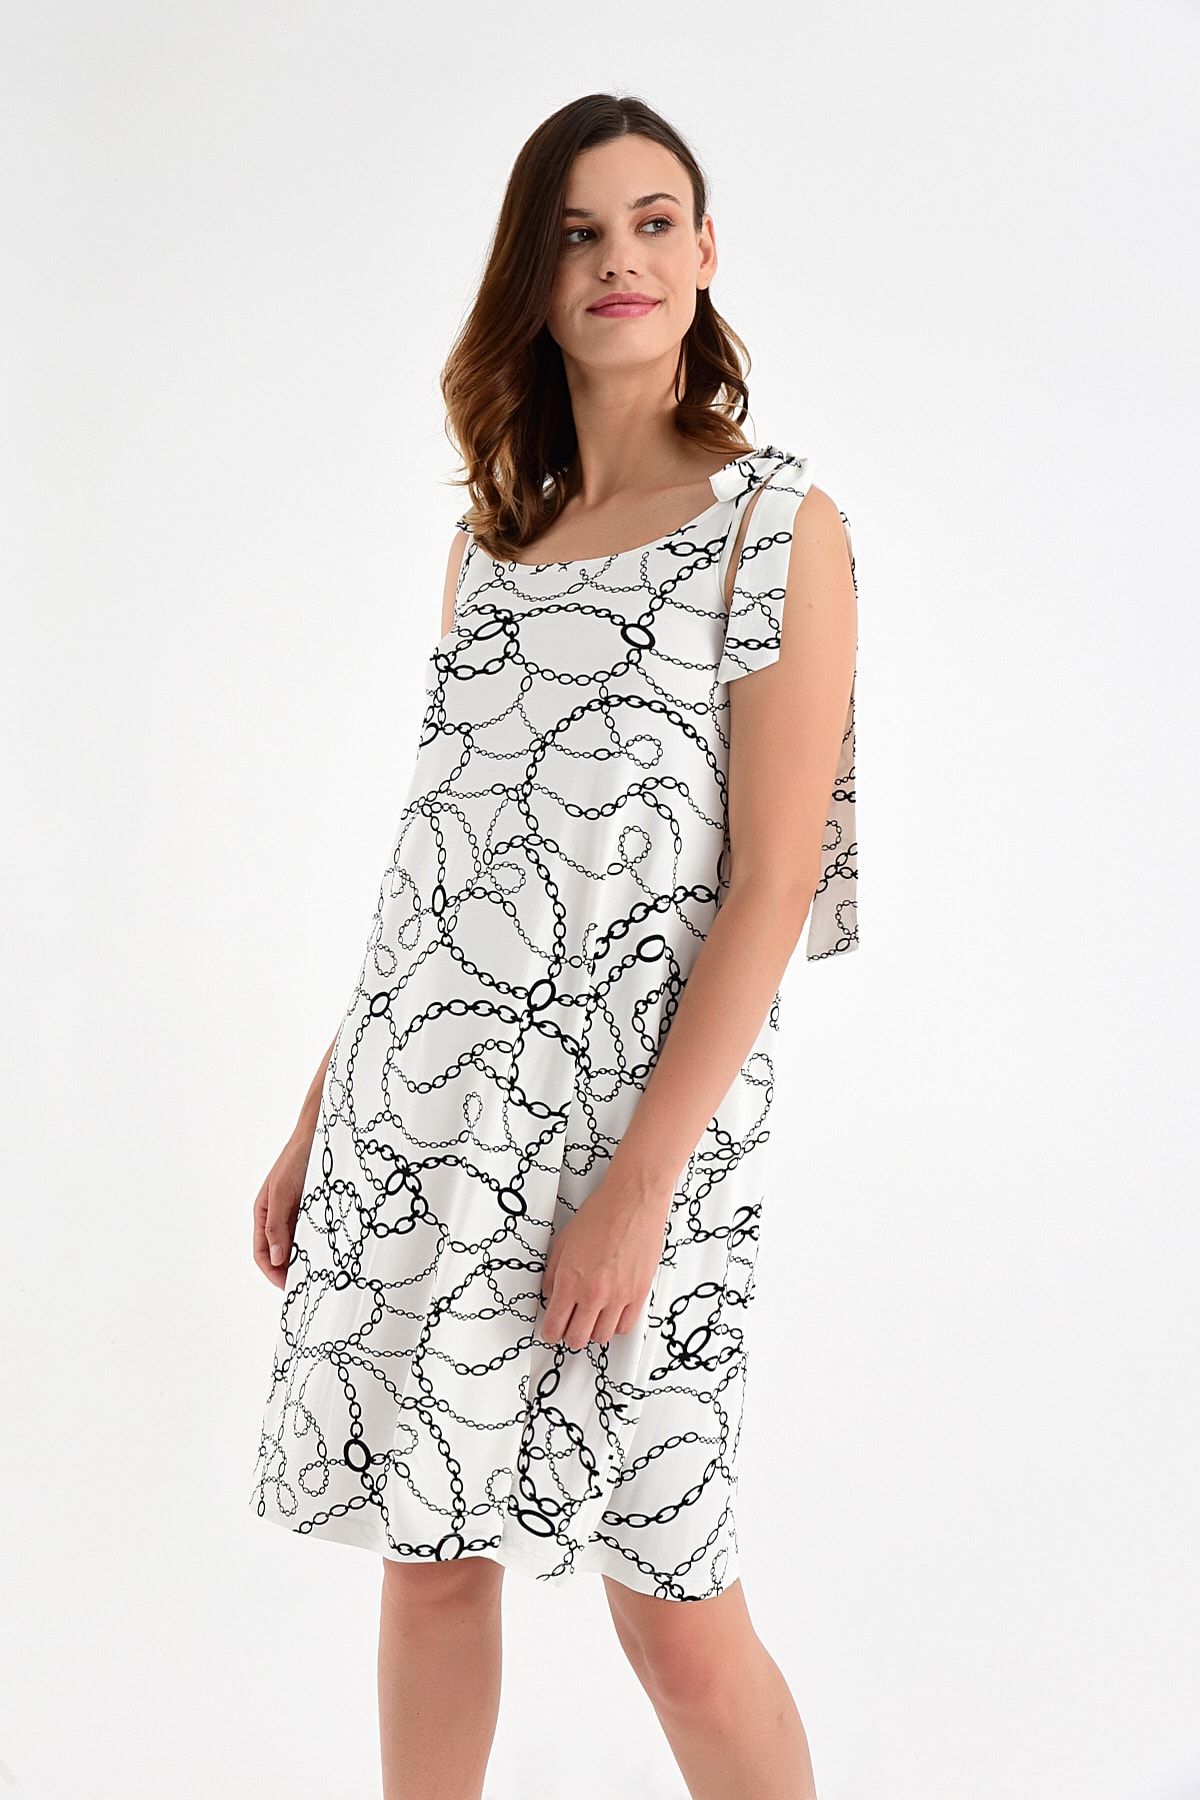 Laranor Kadın Desen-2 Omuzdan Bağlamalı Desenli Elbise 20L6839